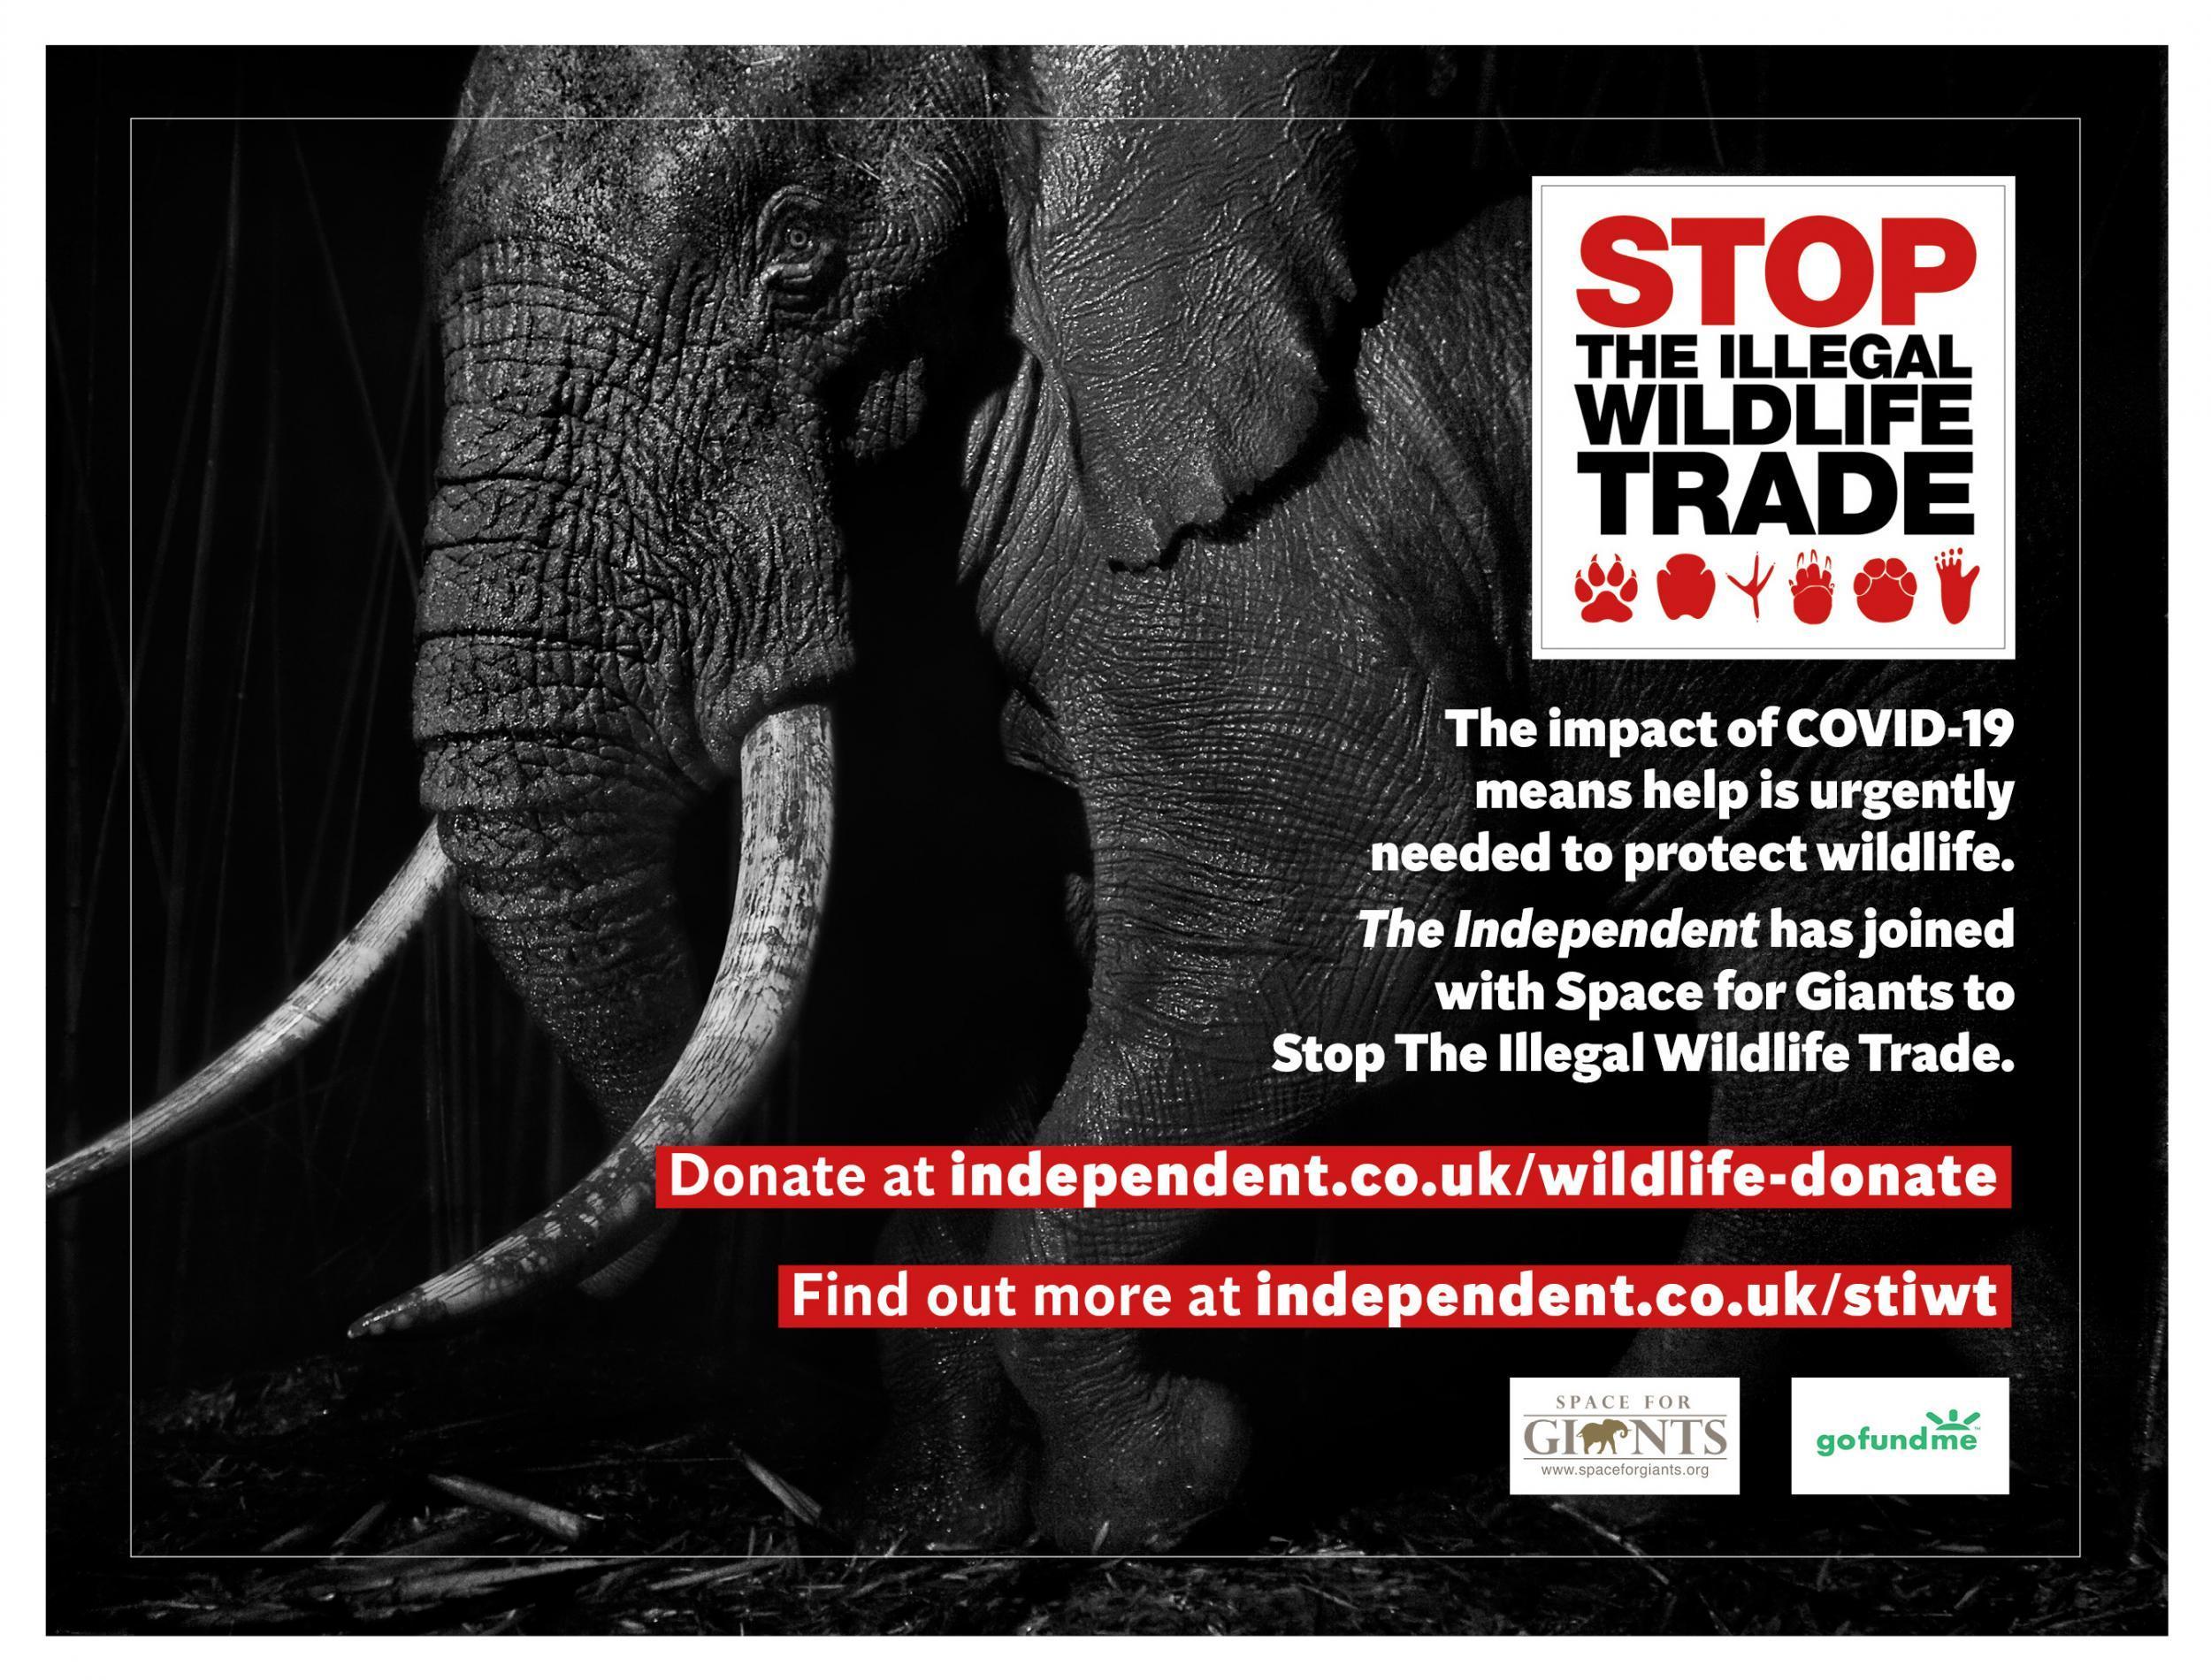 La crisis de conservación del Covid-19 ha demostrado la urgencia de la campaña Stop the Independent Wildlife Trade, que busca un esfuerzo internacional para reprimir el comercio ilegal de animales salvajes.